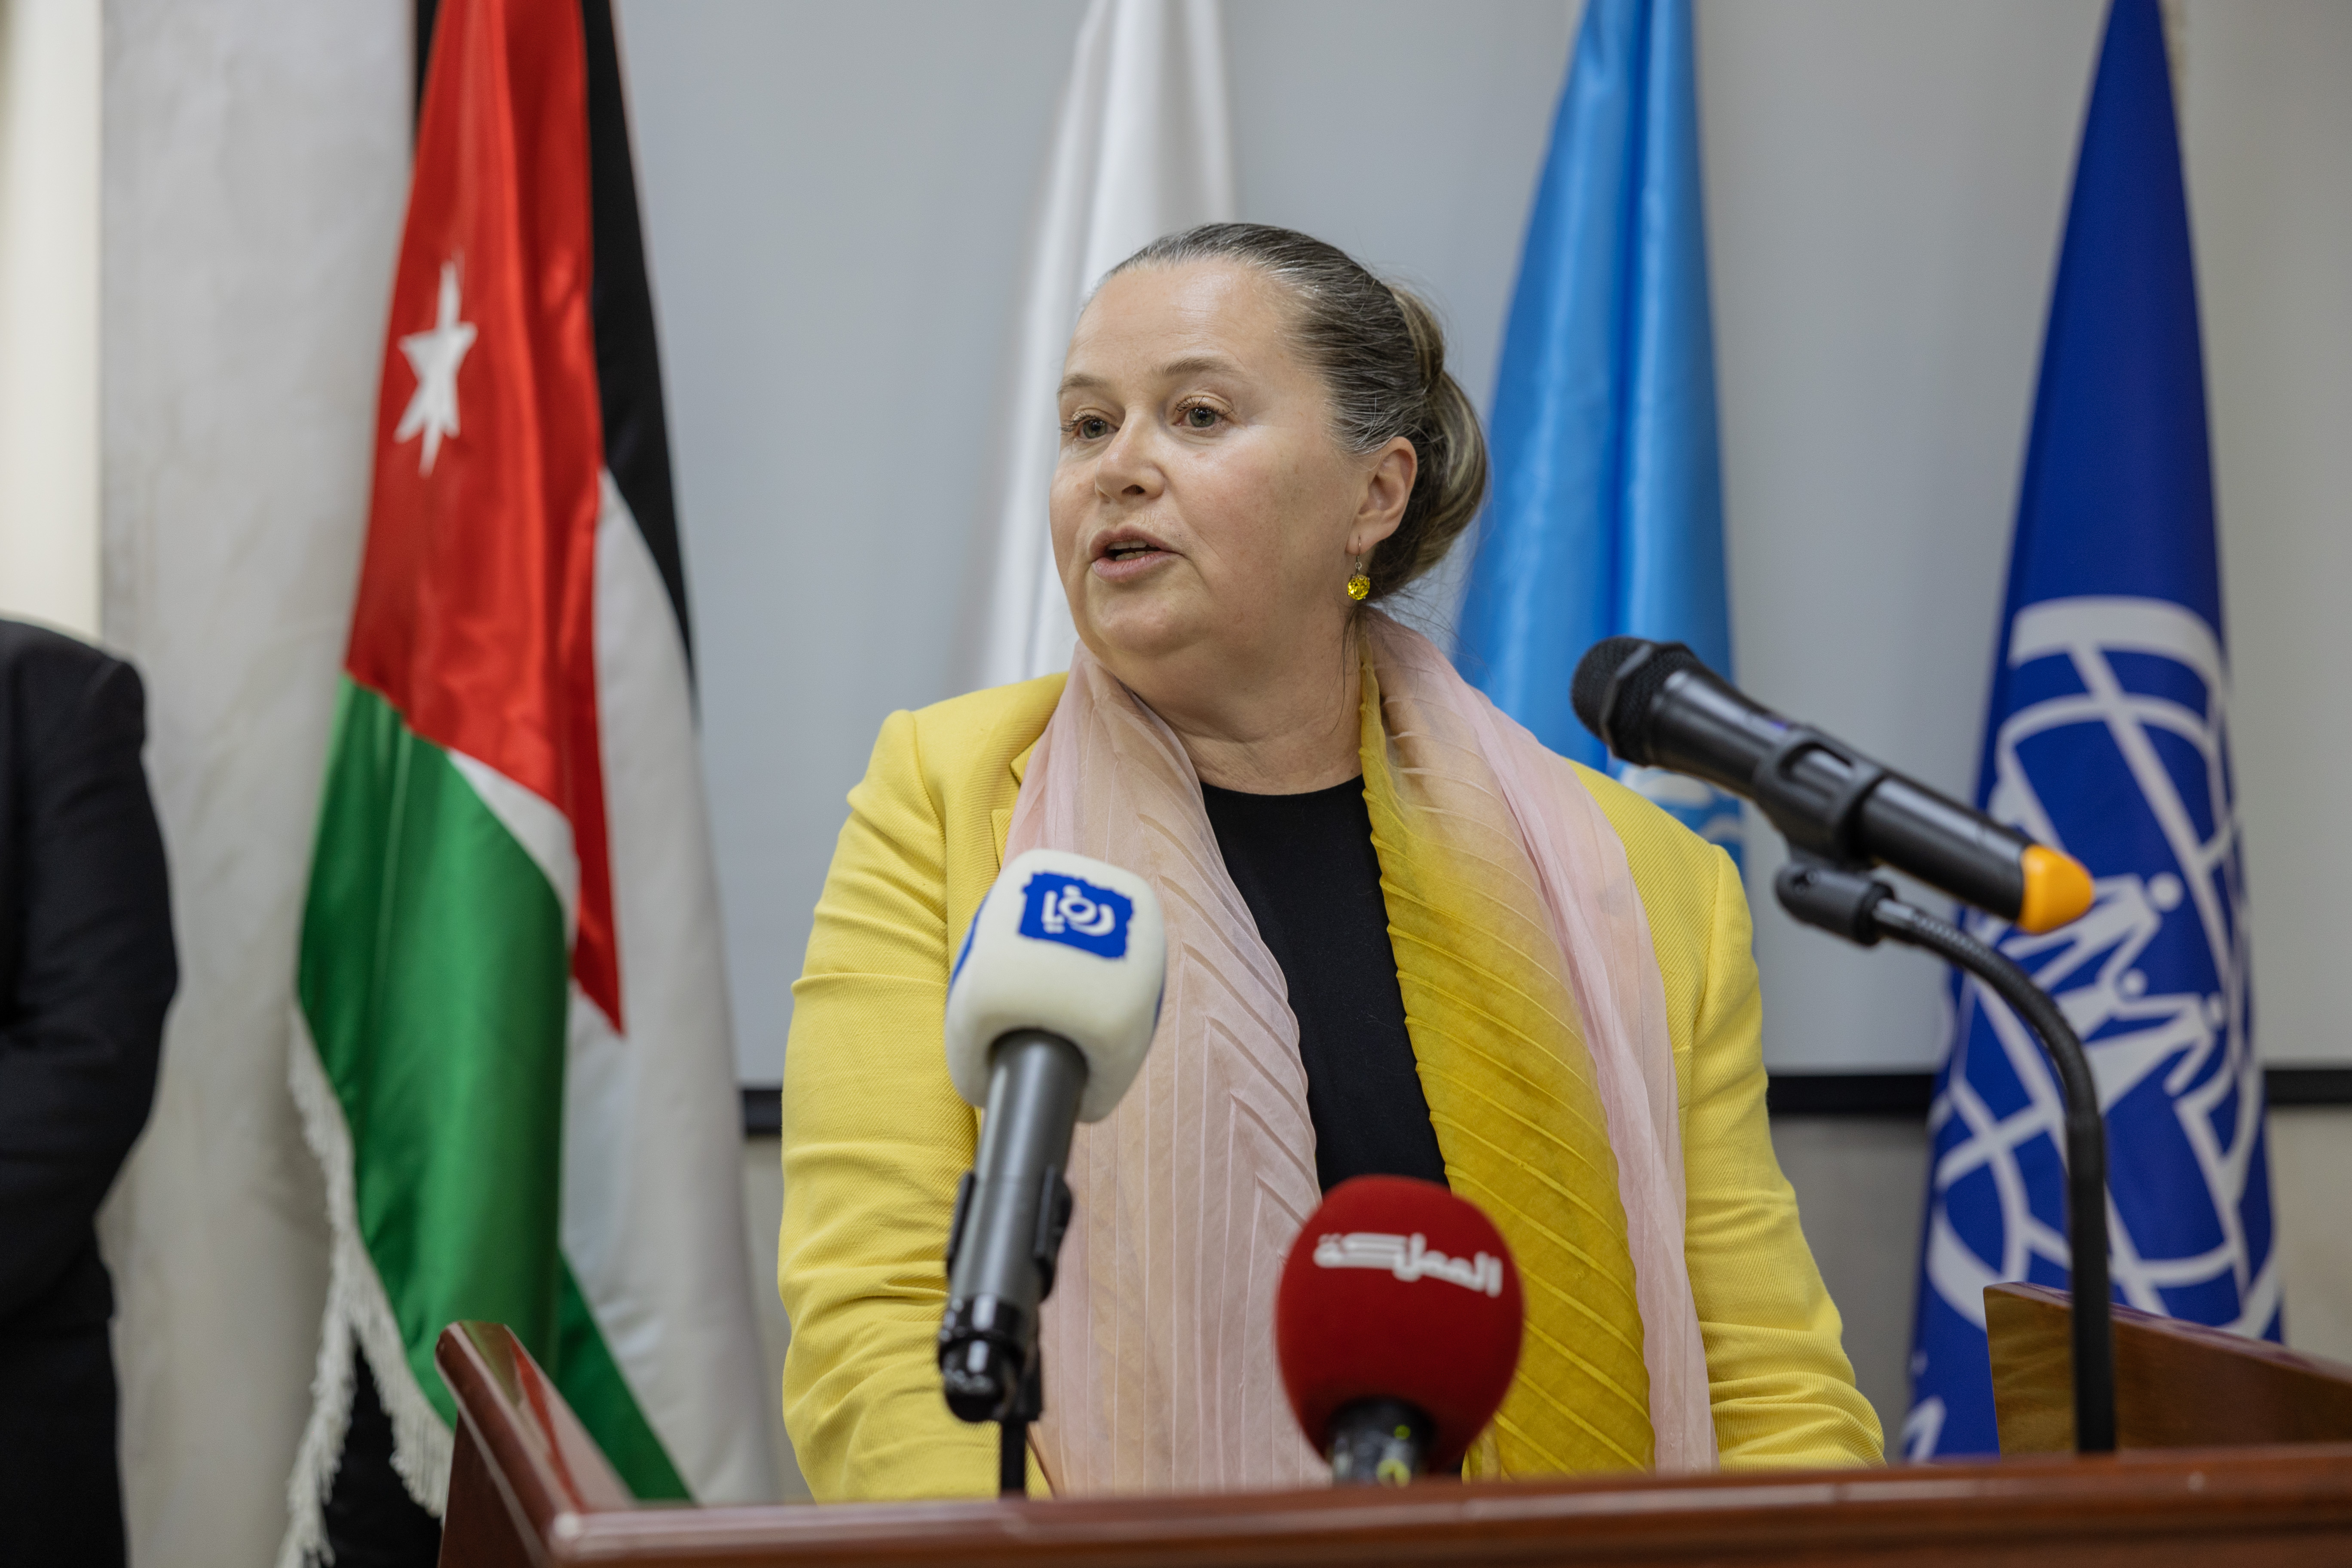 Opening remarks IOM Jordan Chief of Mission, Ms Tajma Kurt